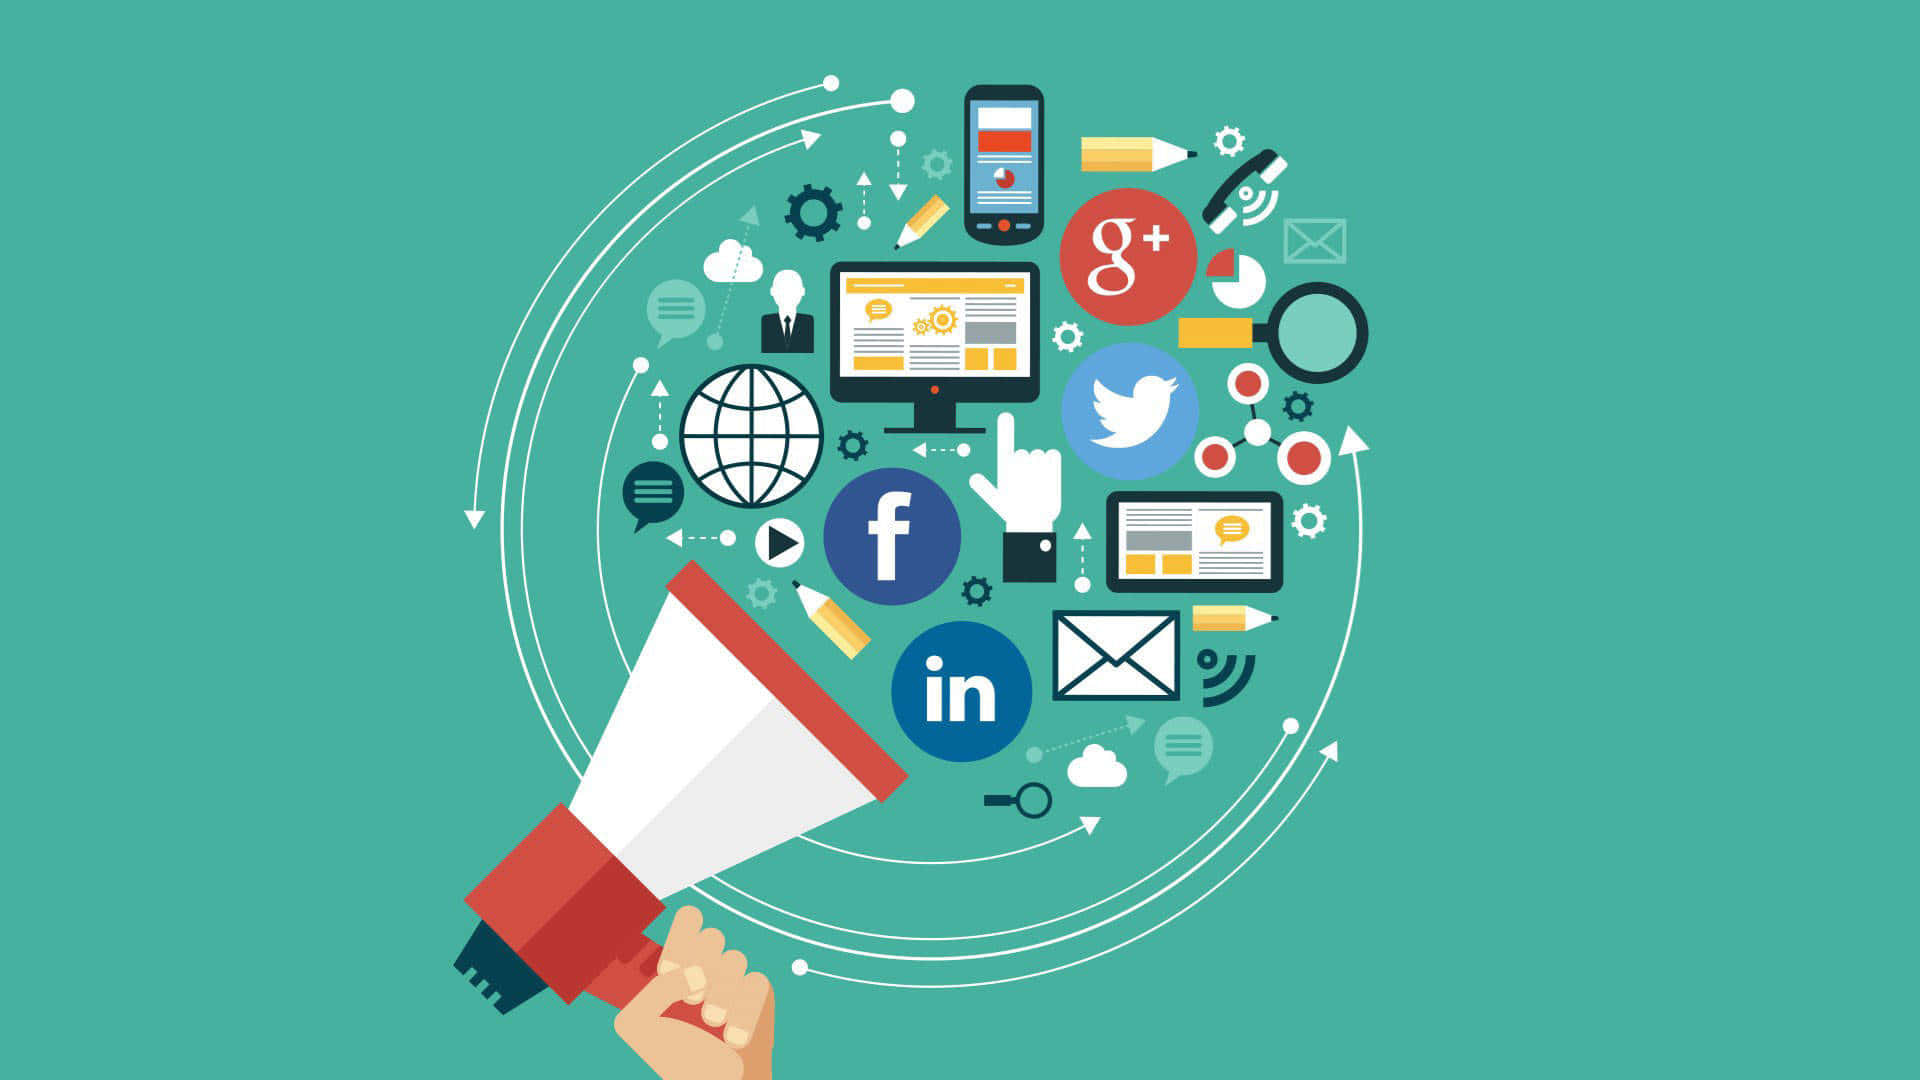 Socialmedia Marknadsföring - Vad Är Det?